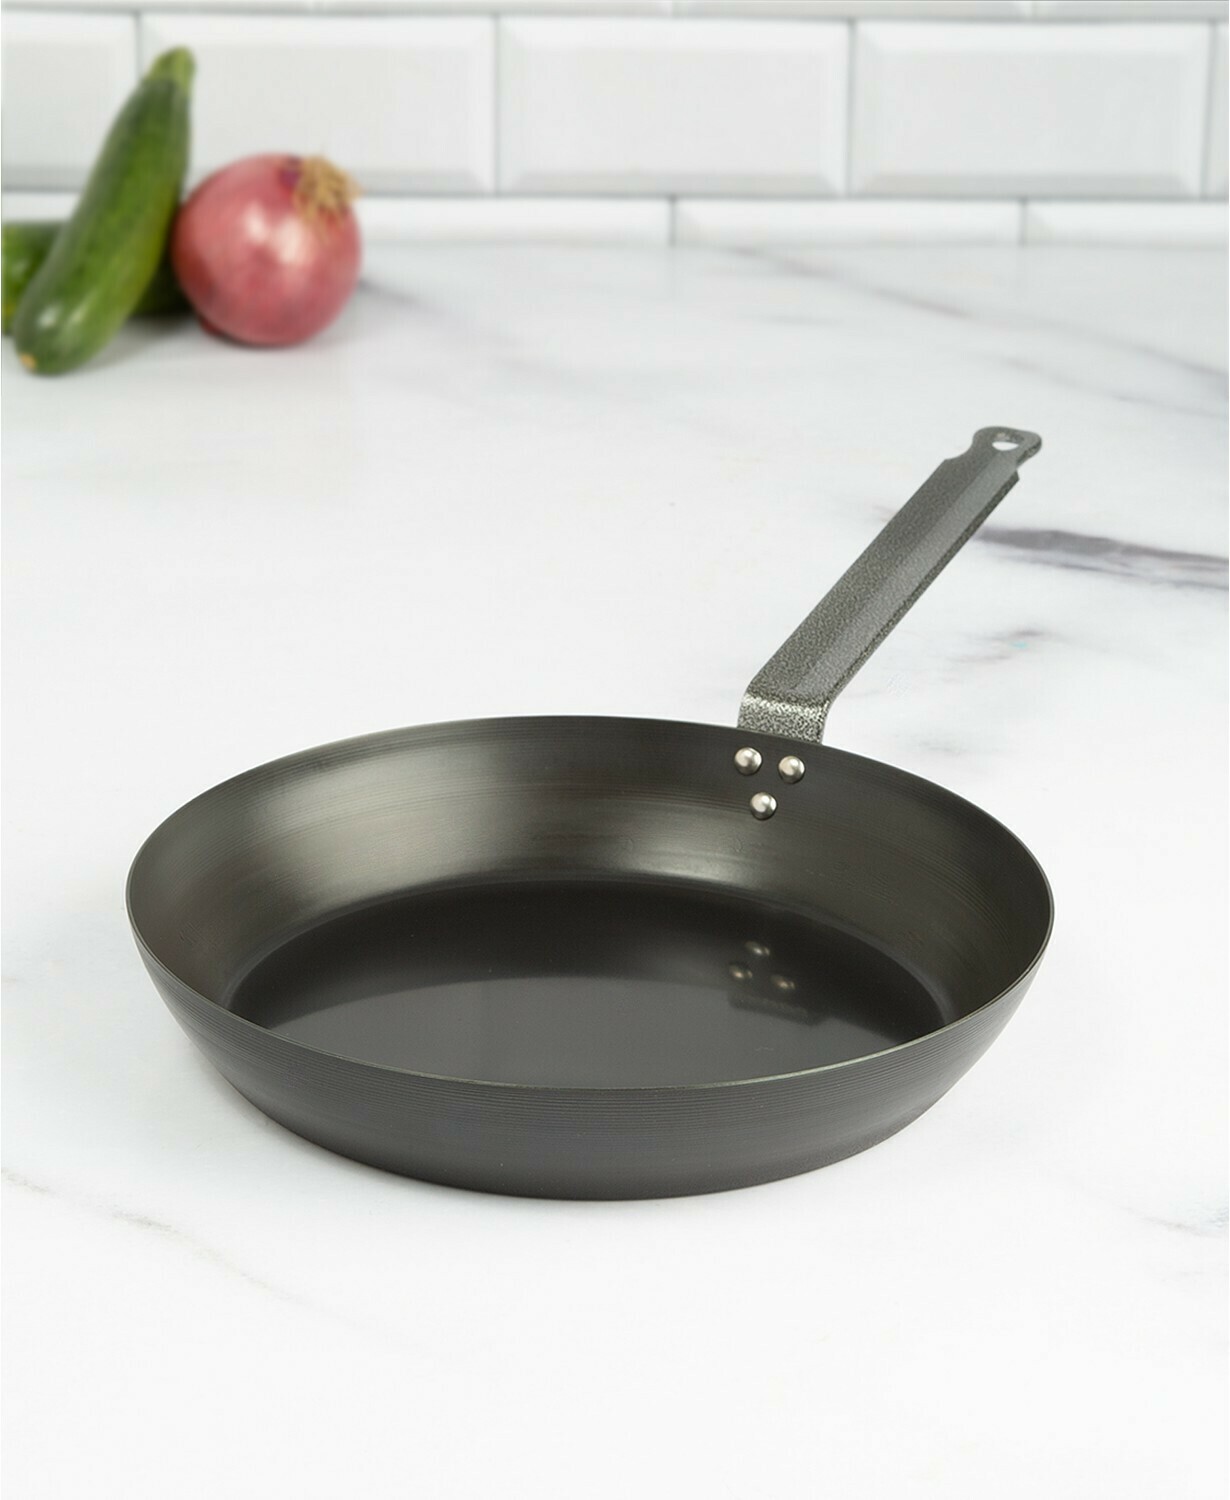 Goodful 10" Carbon Steel Pre-Seasoned Fry Pan